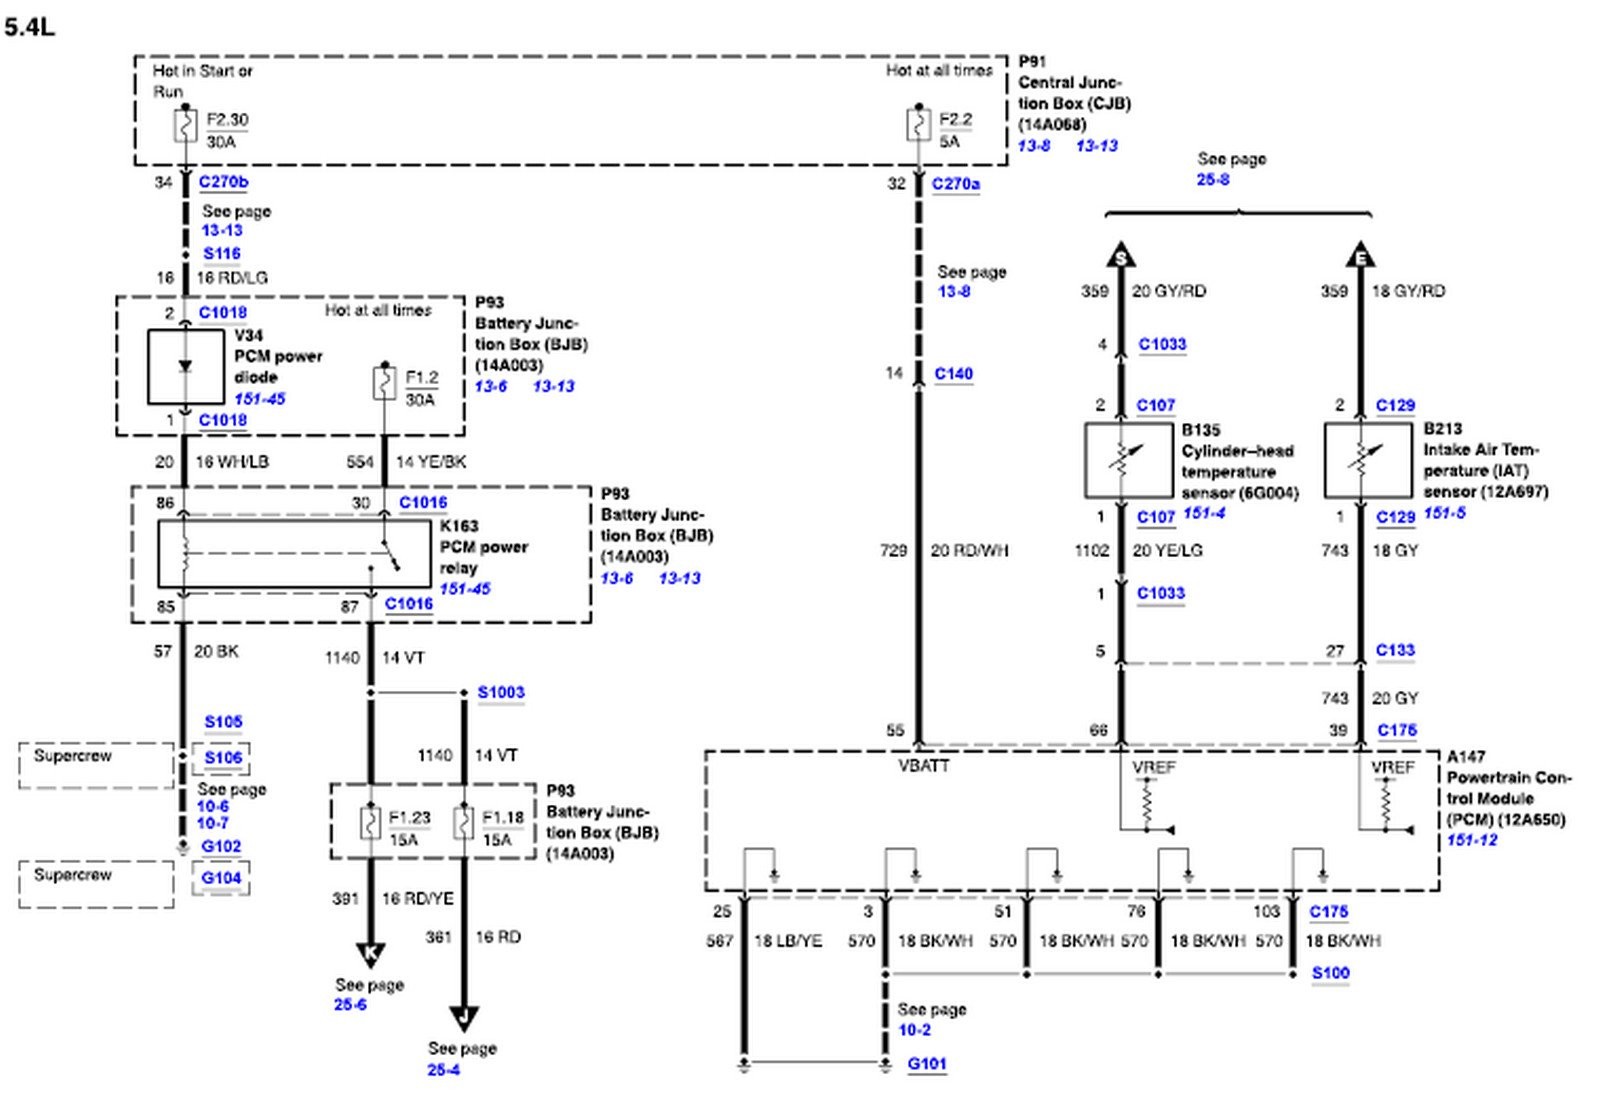 2002 ford F-150 4.2 Wiring Diagram Wiring Diagram 2002 ford F150 Wiring Diagram Of 2002 ford F-150 4.2 Wiring Diagram